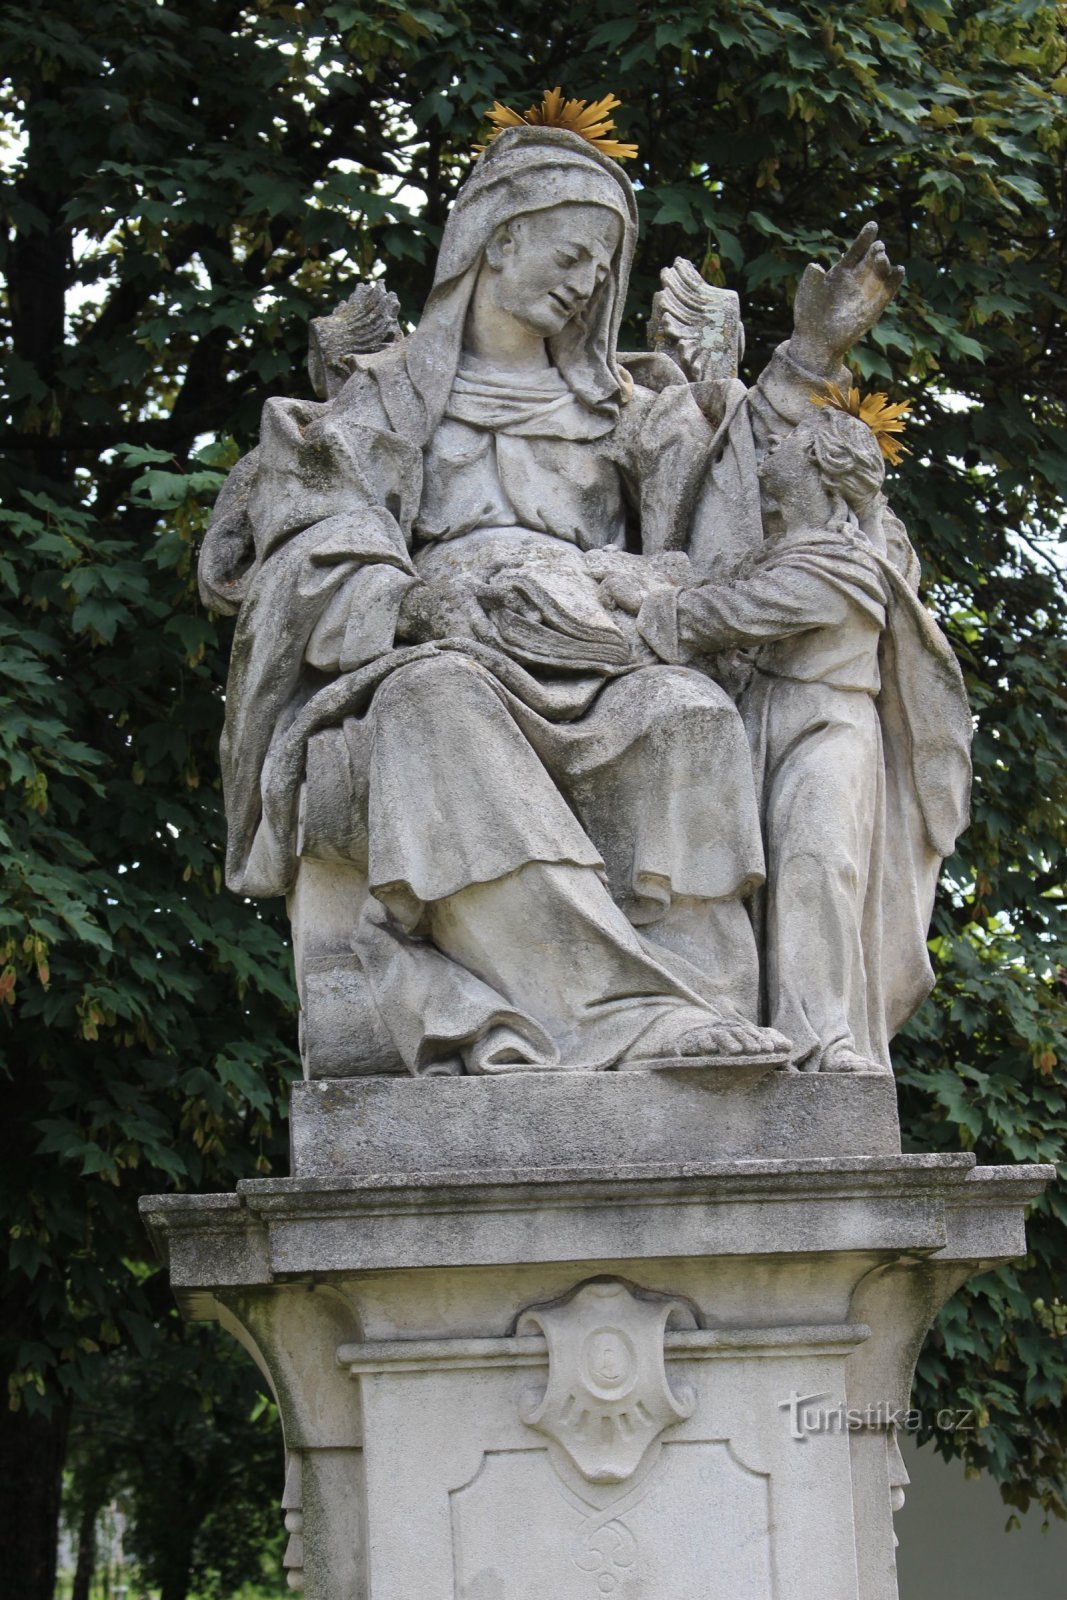 Hodonín - estatua de Santa Ana